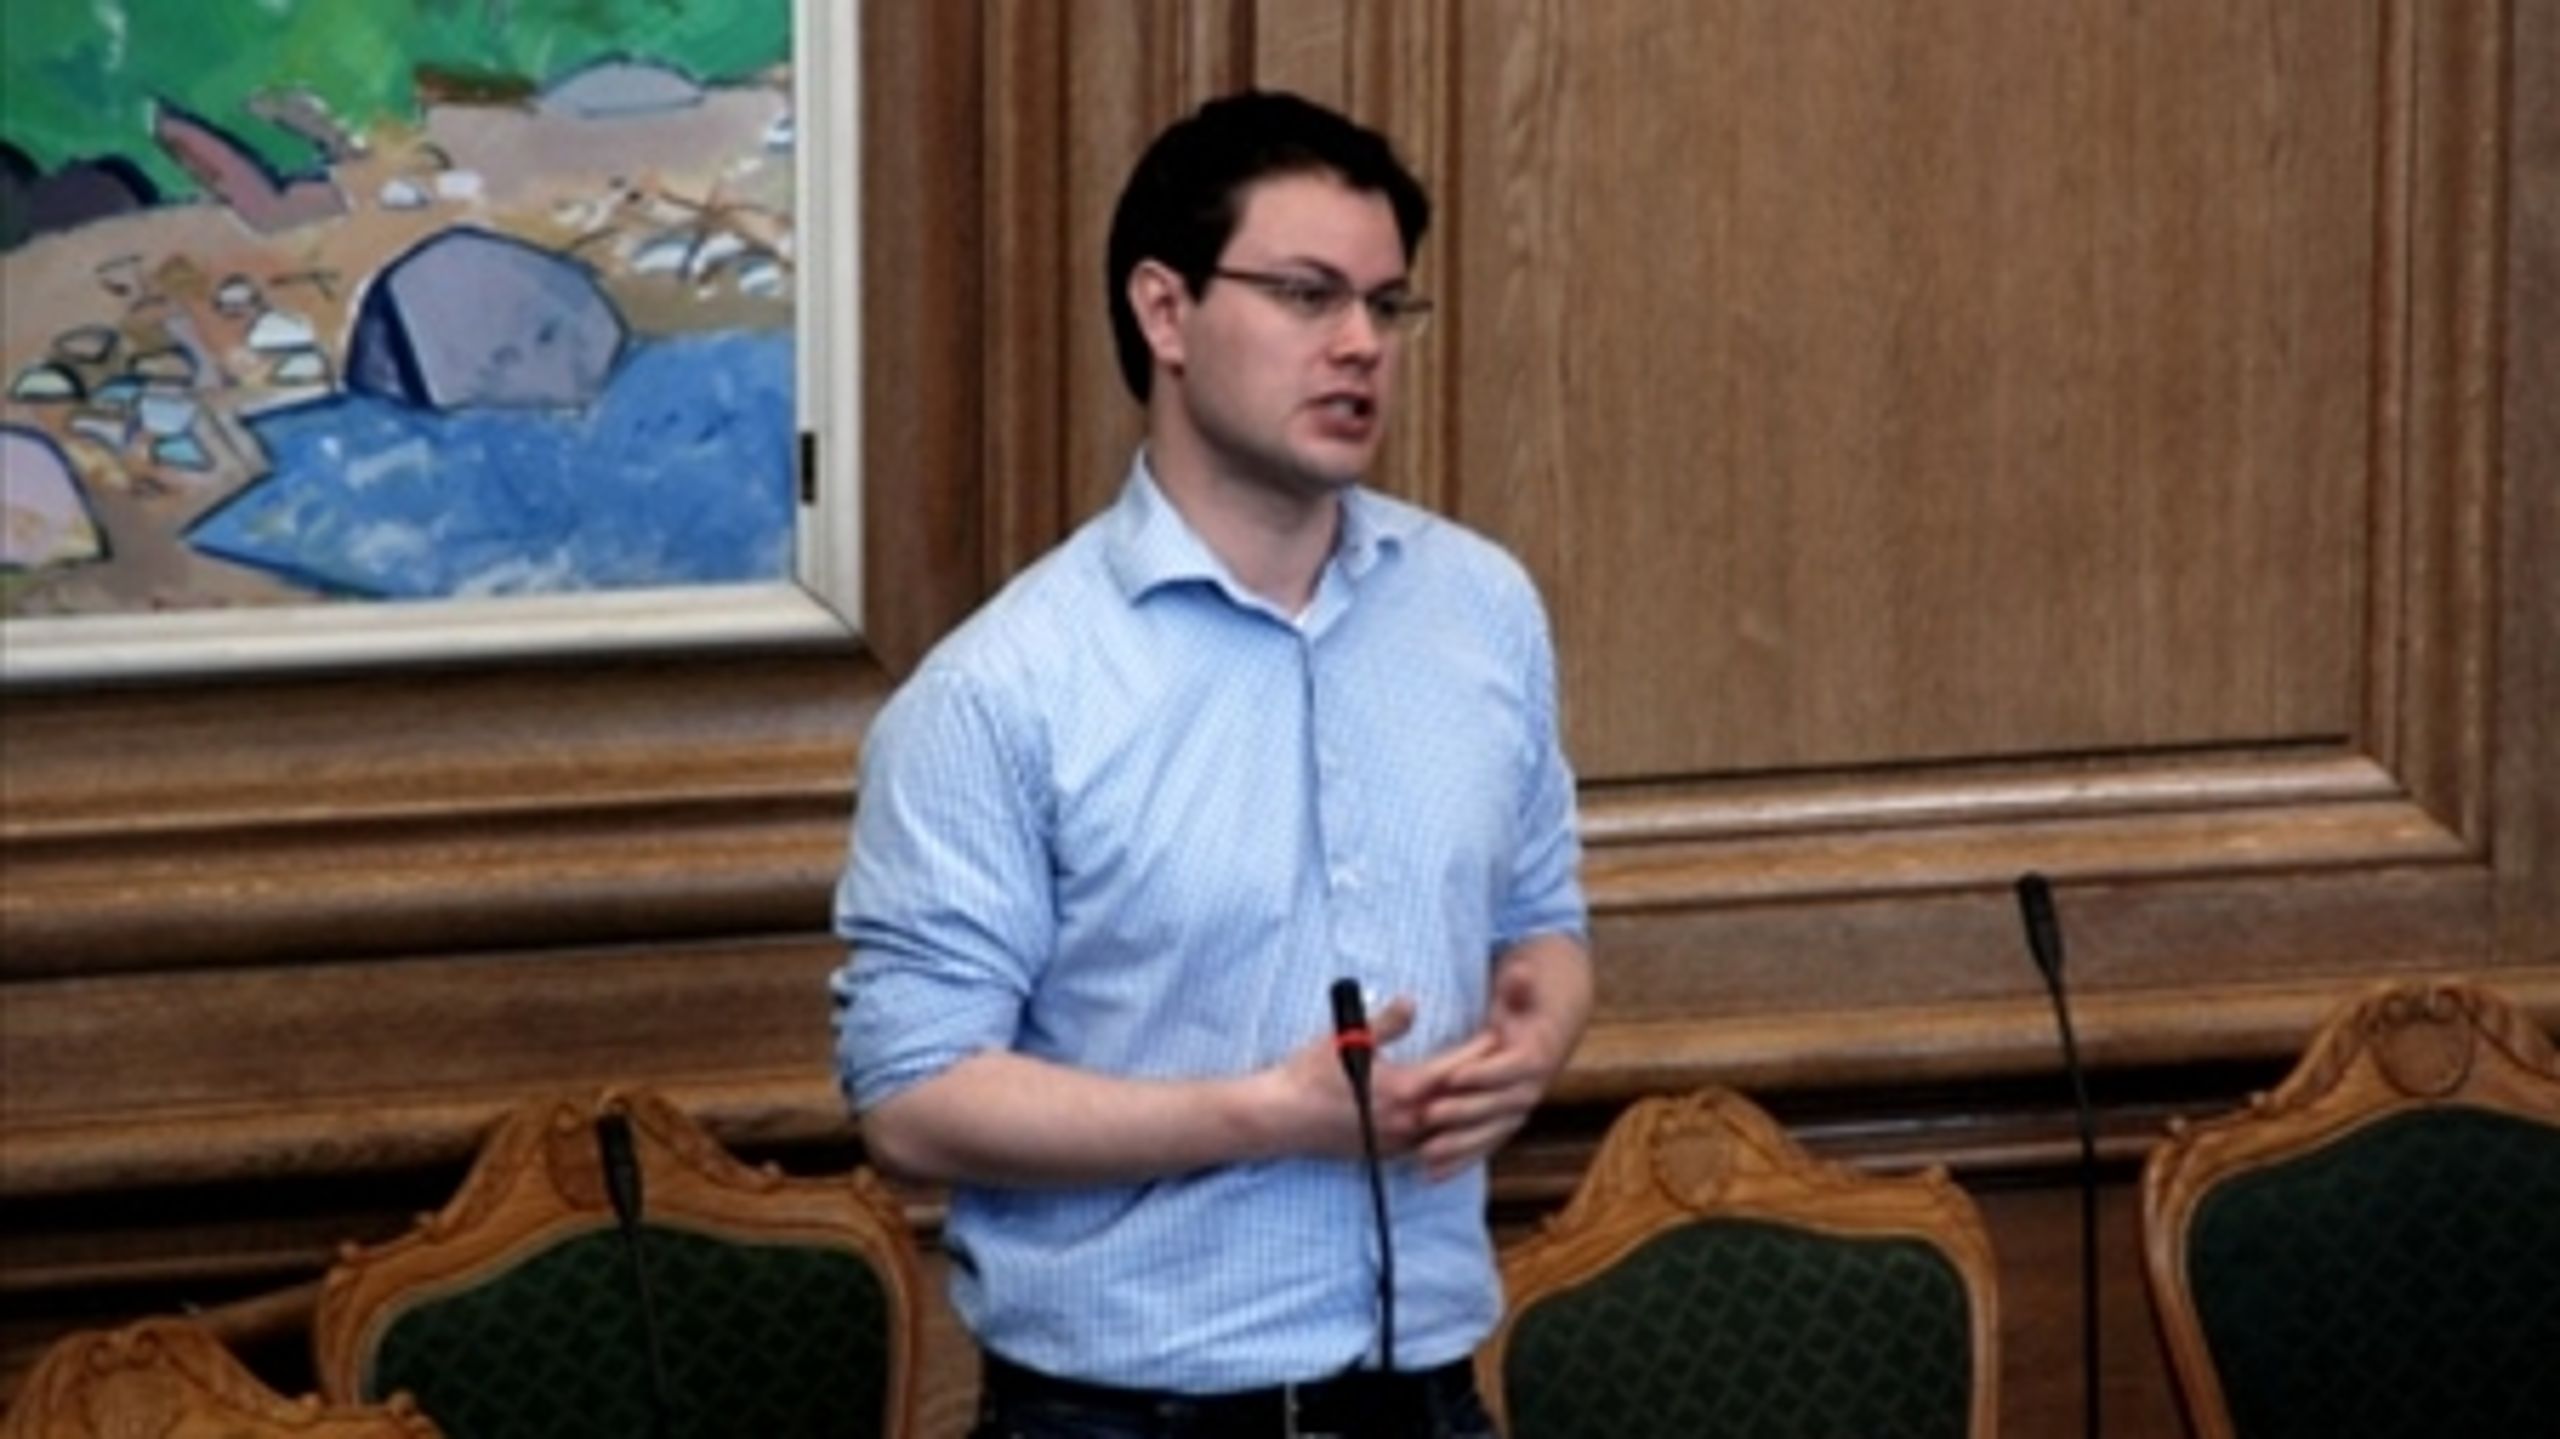 SF's universitetsordfører Jonas Dahl under en debat i folketingssalen.